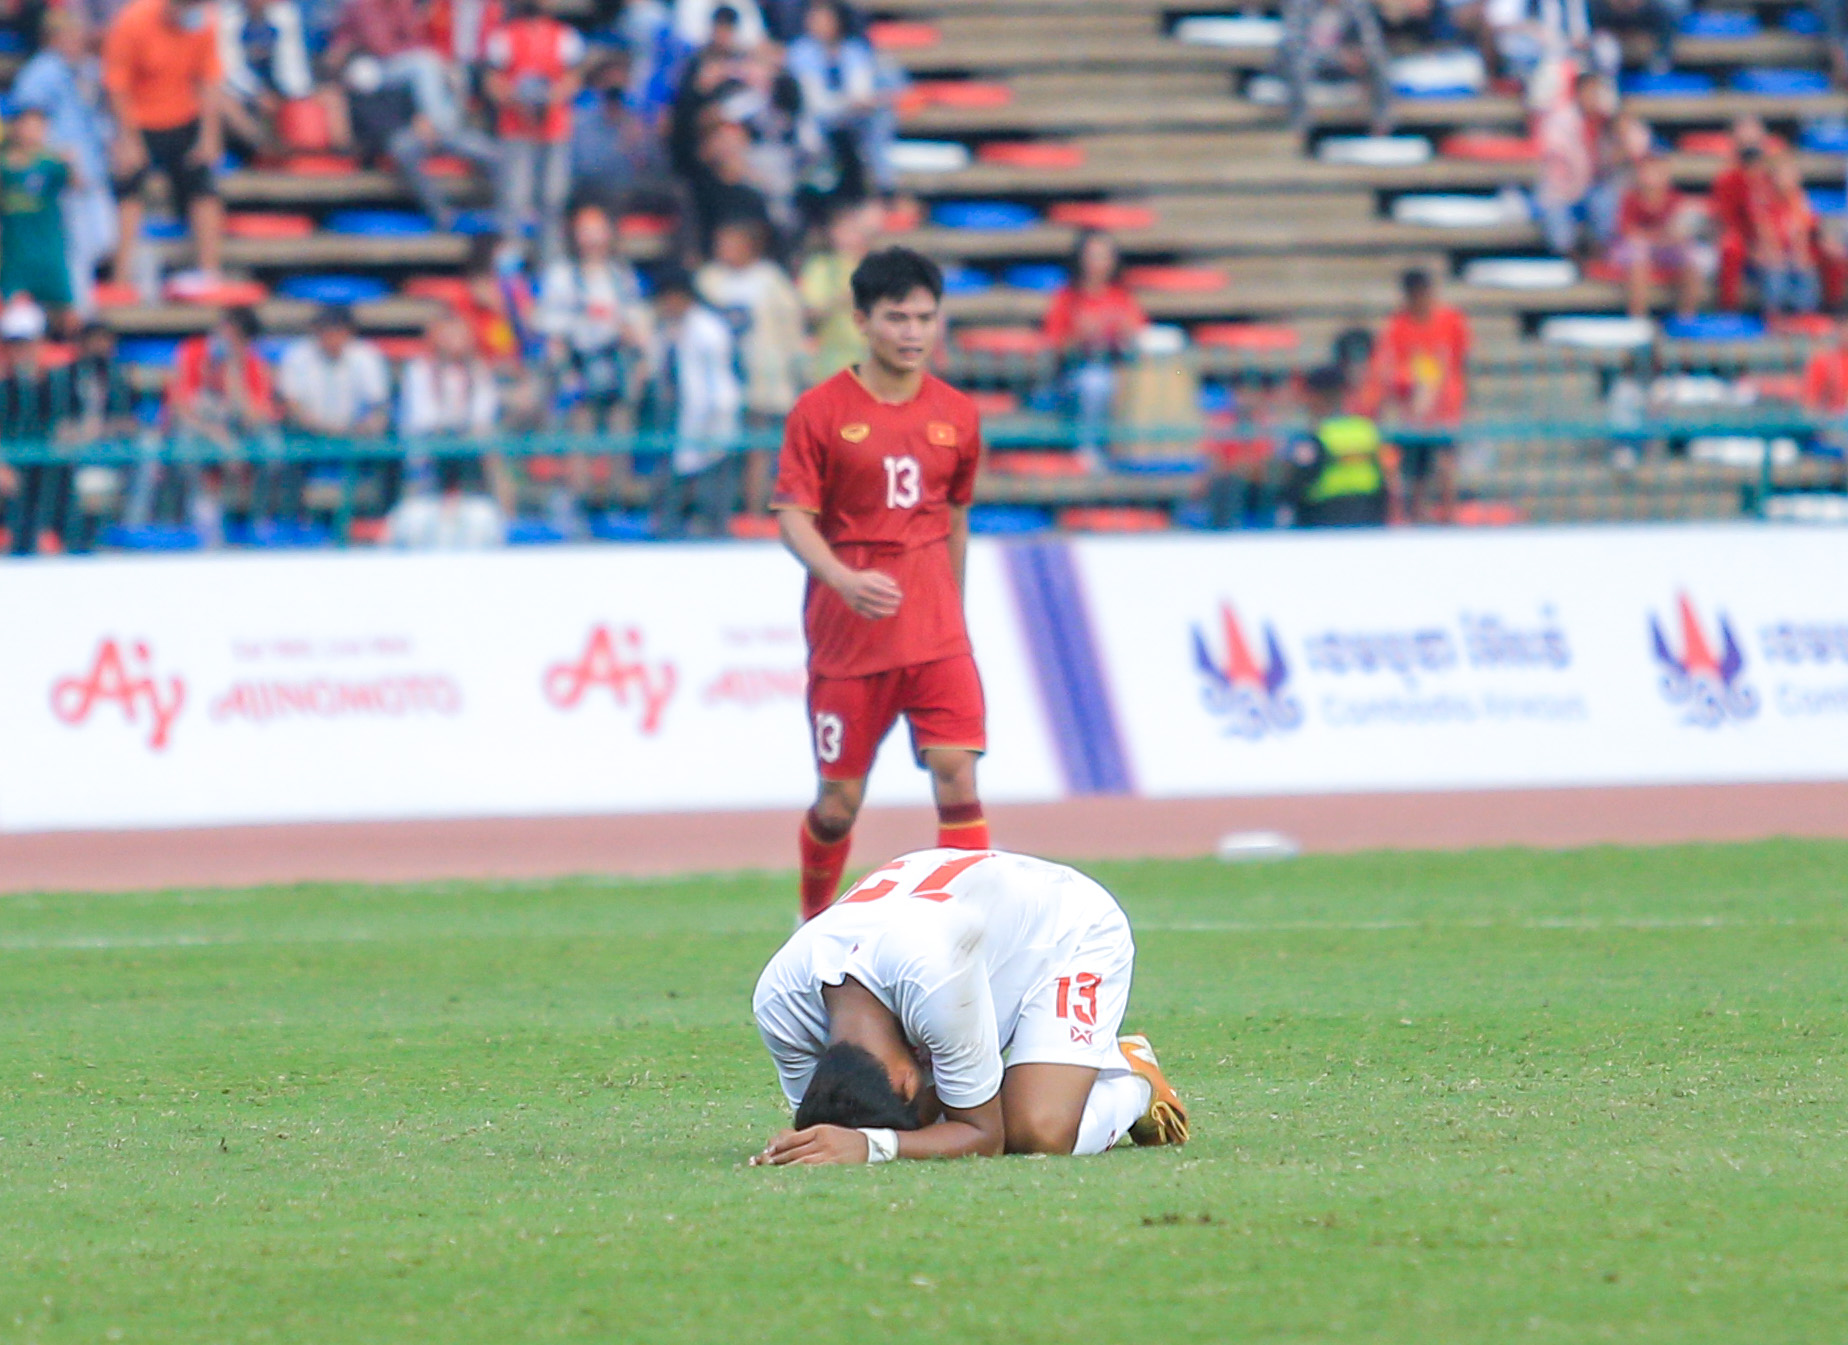 Cảm xúc trái ngược sau trận đấu: U22 Việt Nam hân hoan, cầu thủ U22 Myanmar đổ gục sau khi tuột HCĐ - Ảnh 5.